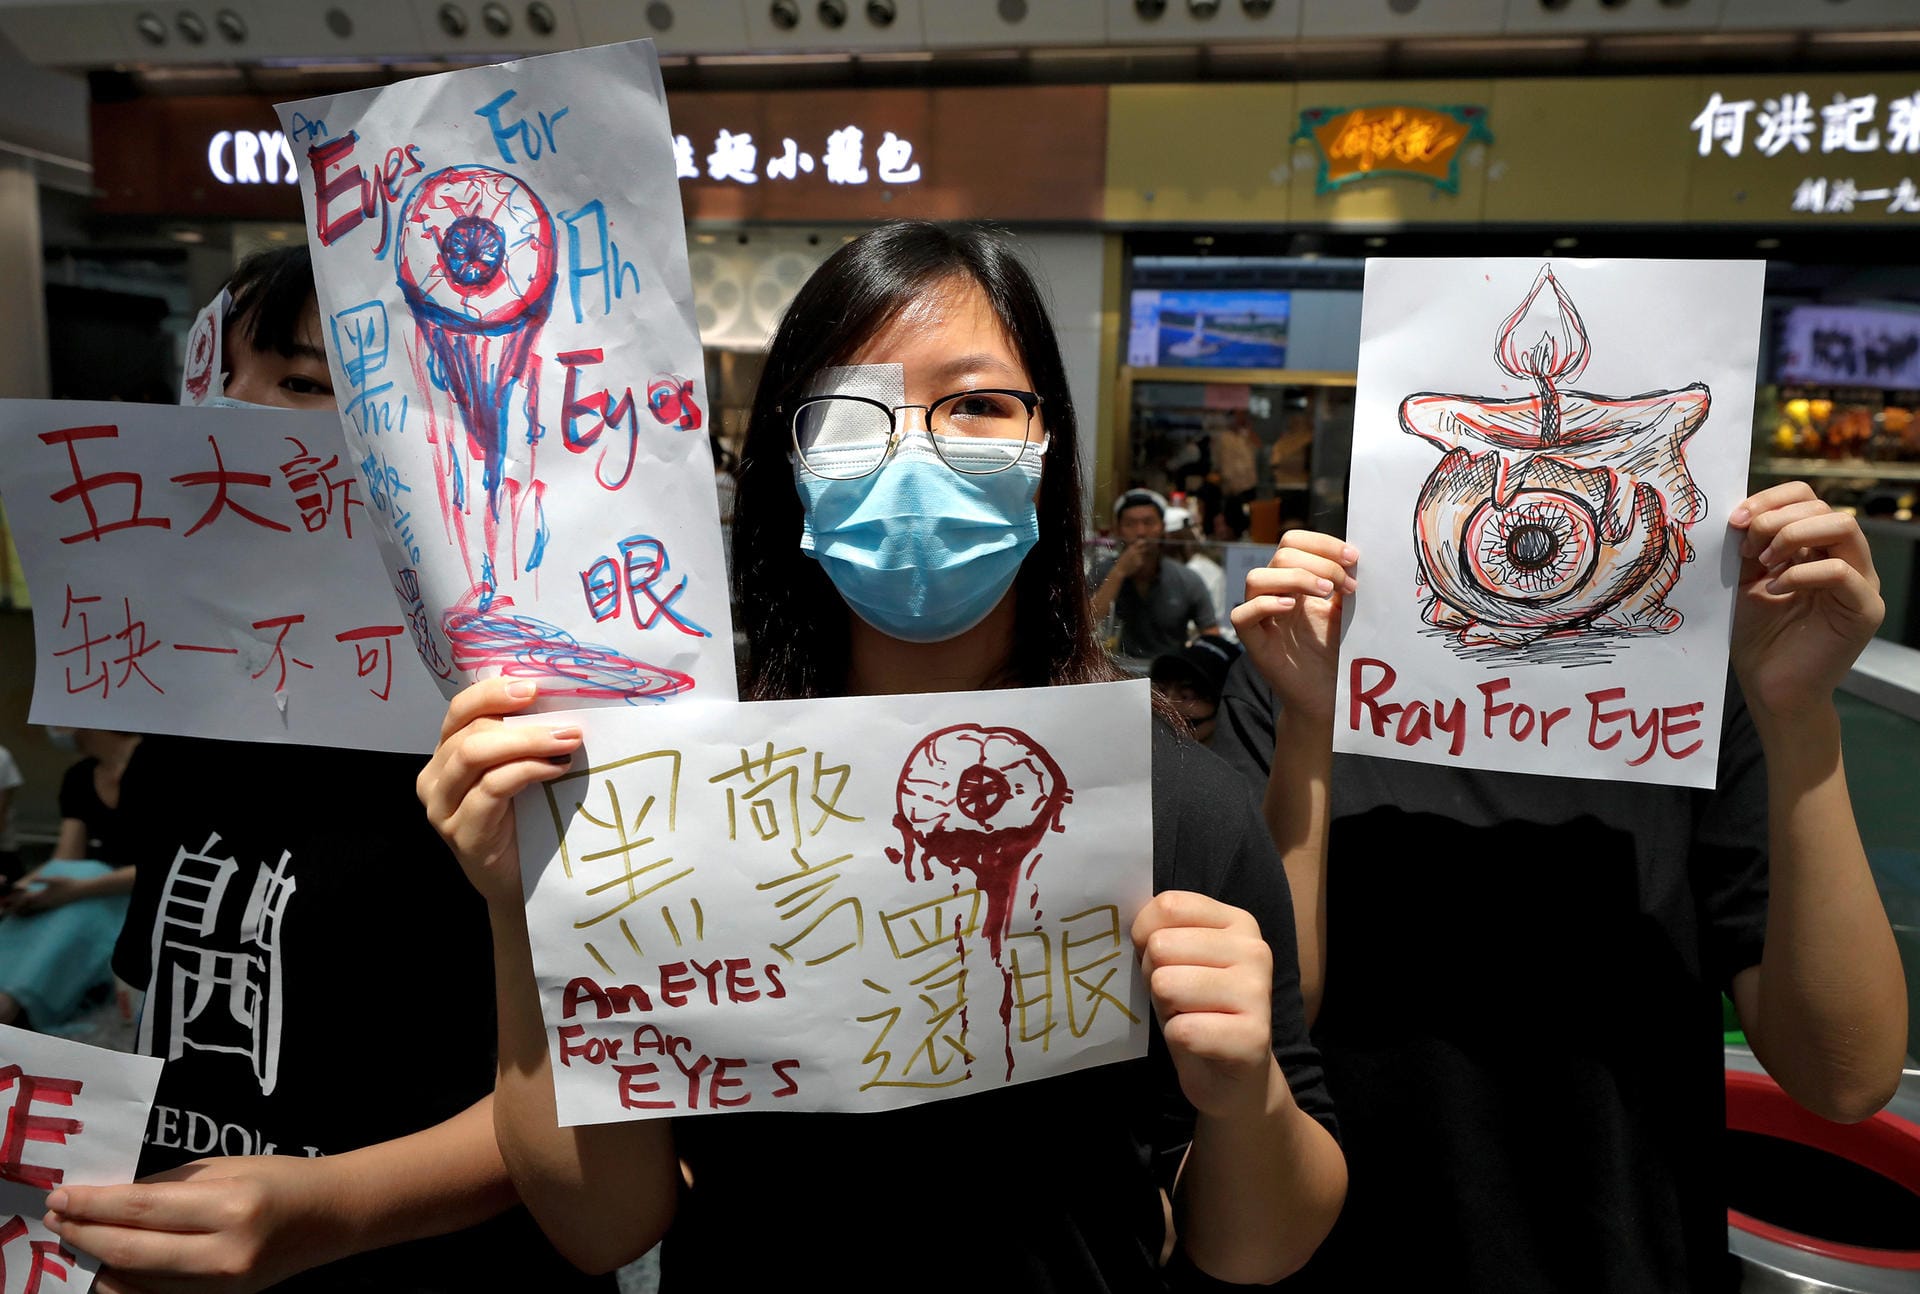 Demonstranten halten in der Ankunftshalle des Flughafens Schilder mit der Aufschrift "Pray for eye": Nach Angaben der Protestierenden hatte die Polizei bei den gewaltsamen Auseinandersetzungen einer Frau ins Auge geschossen.